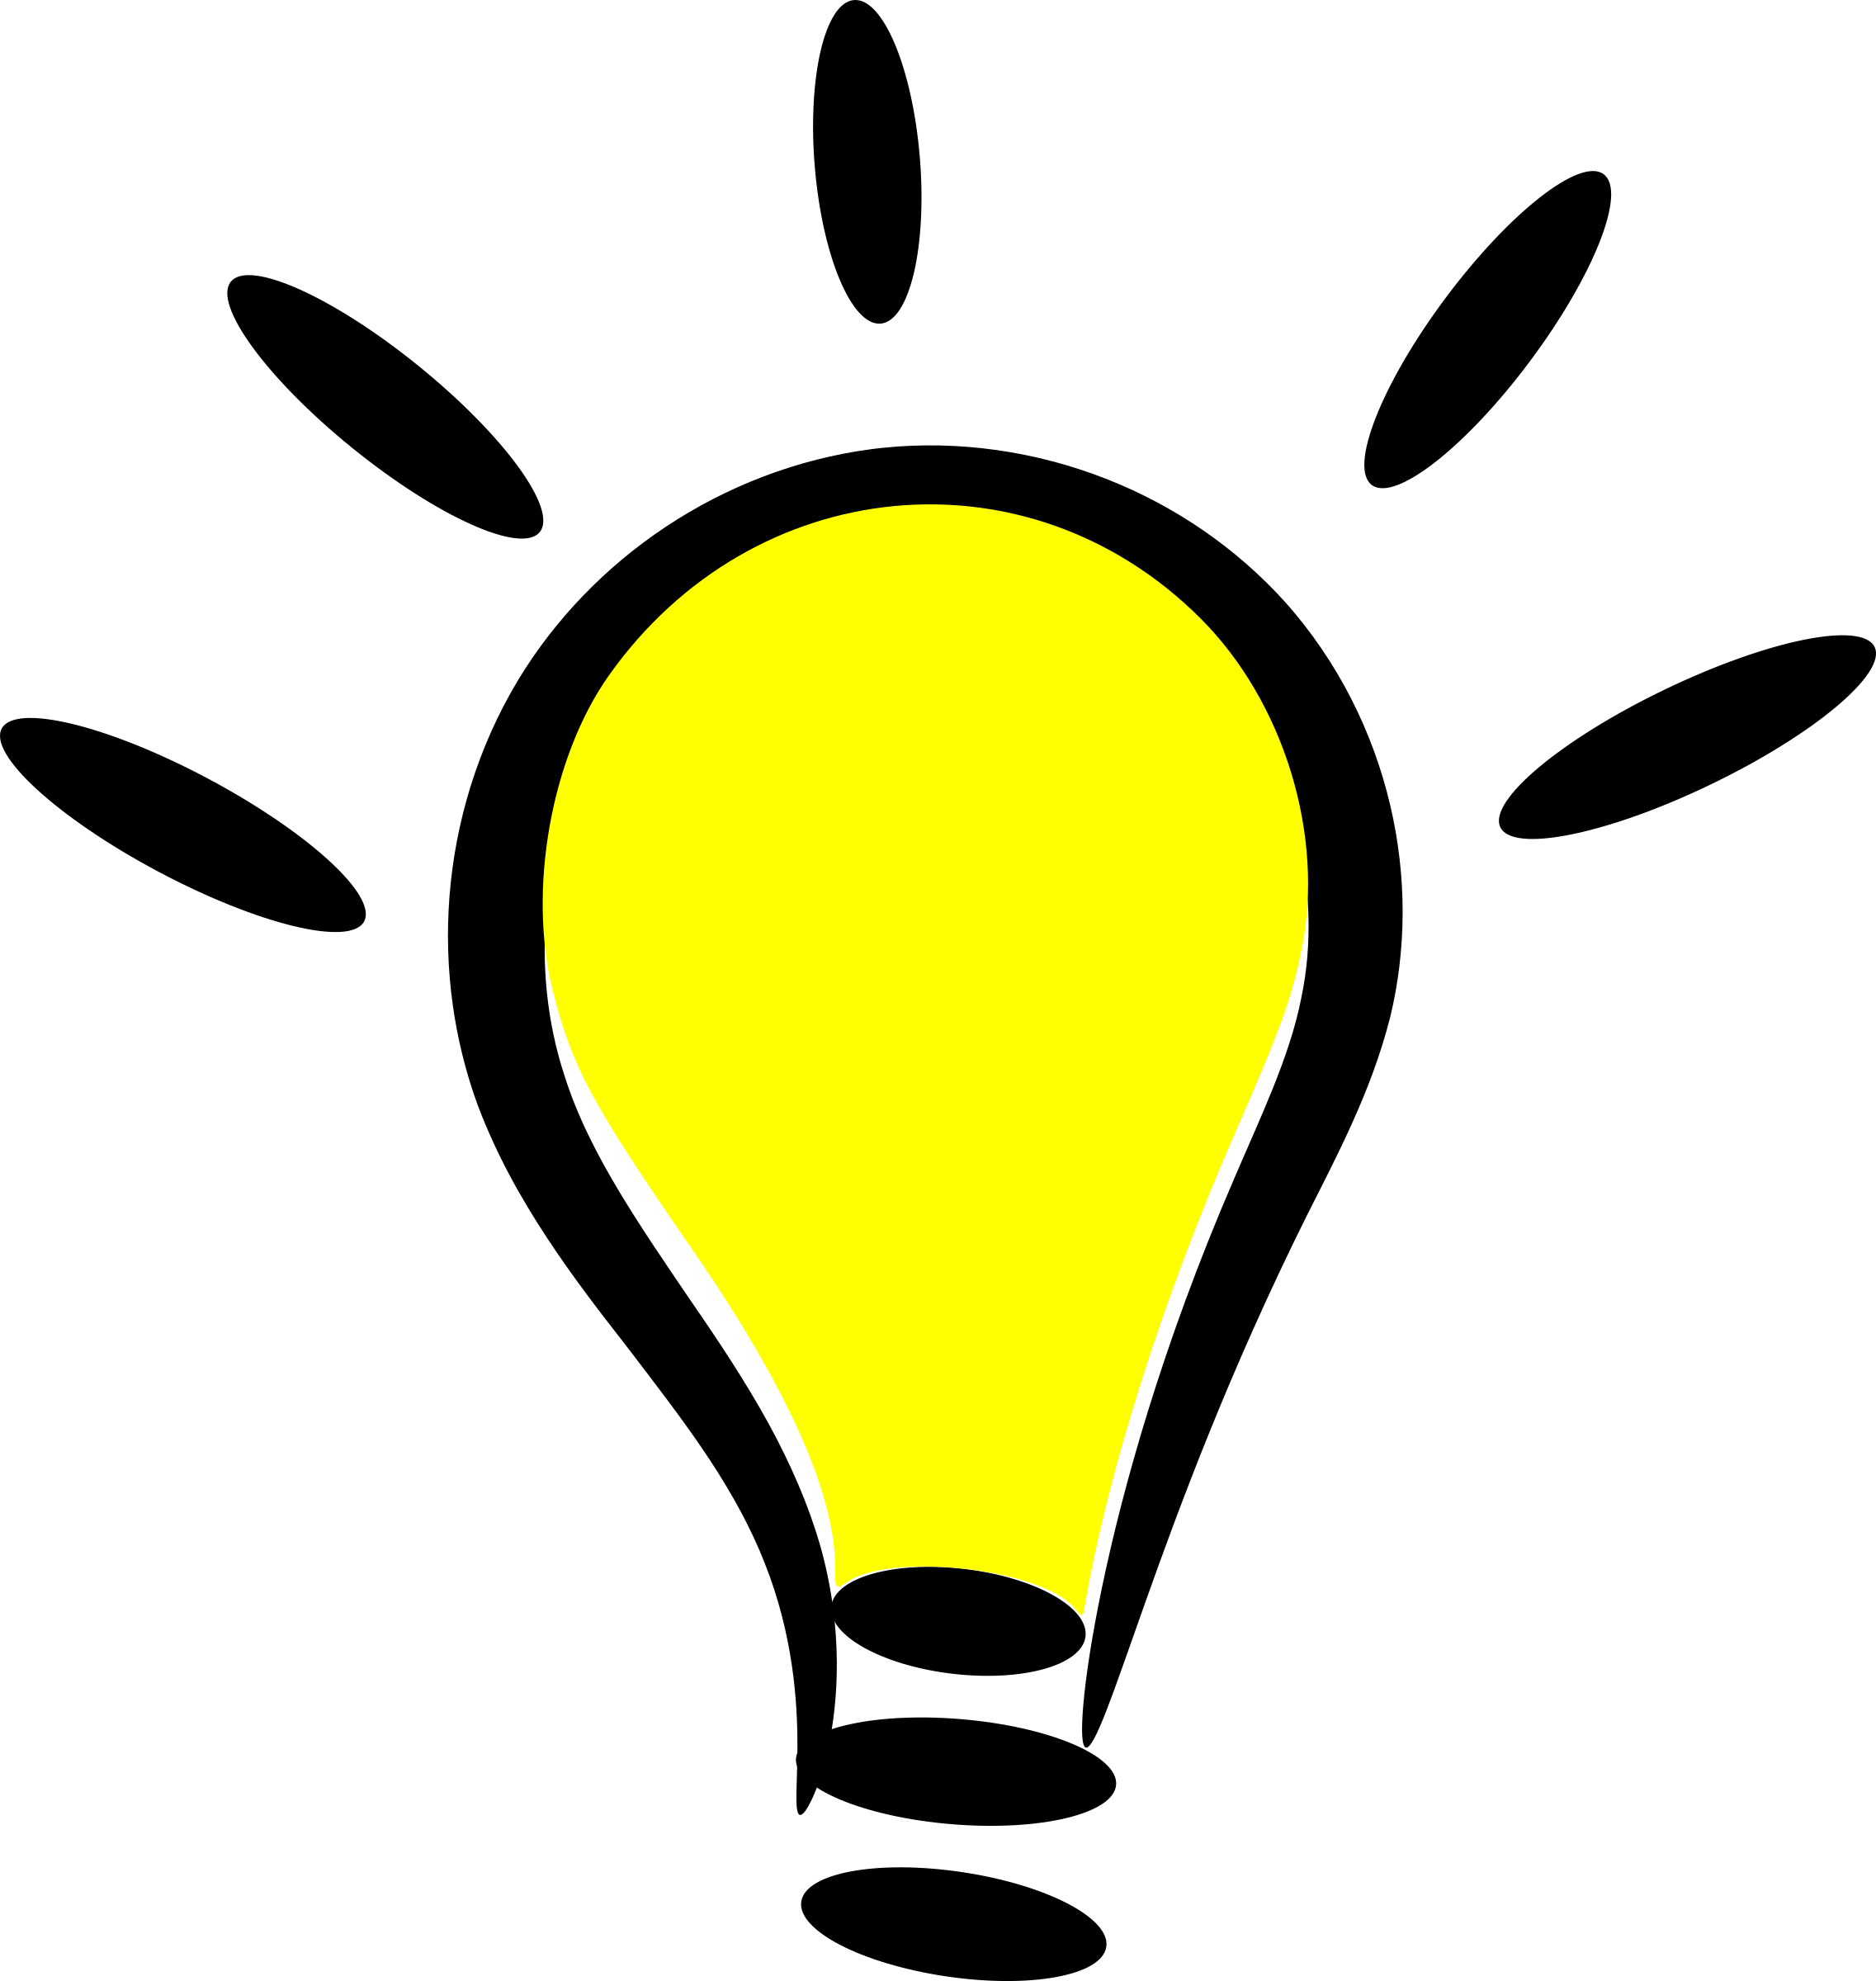 Yellow Light Bulb Clip Art